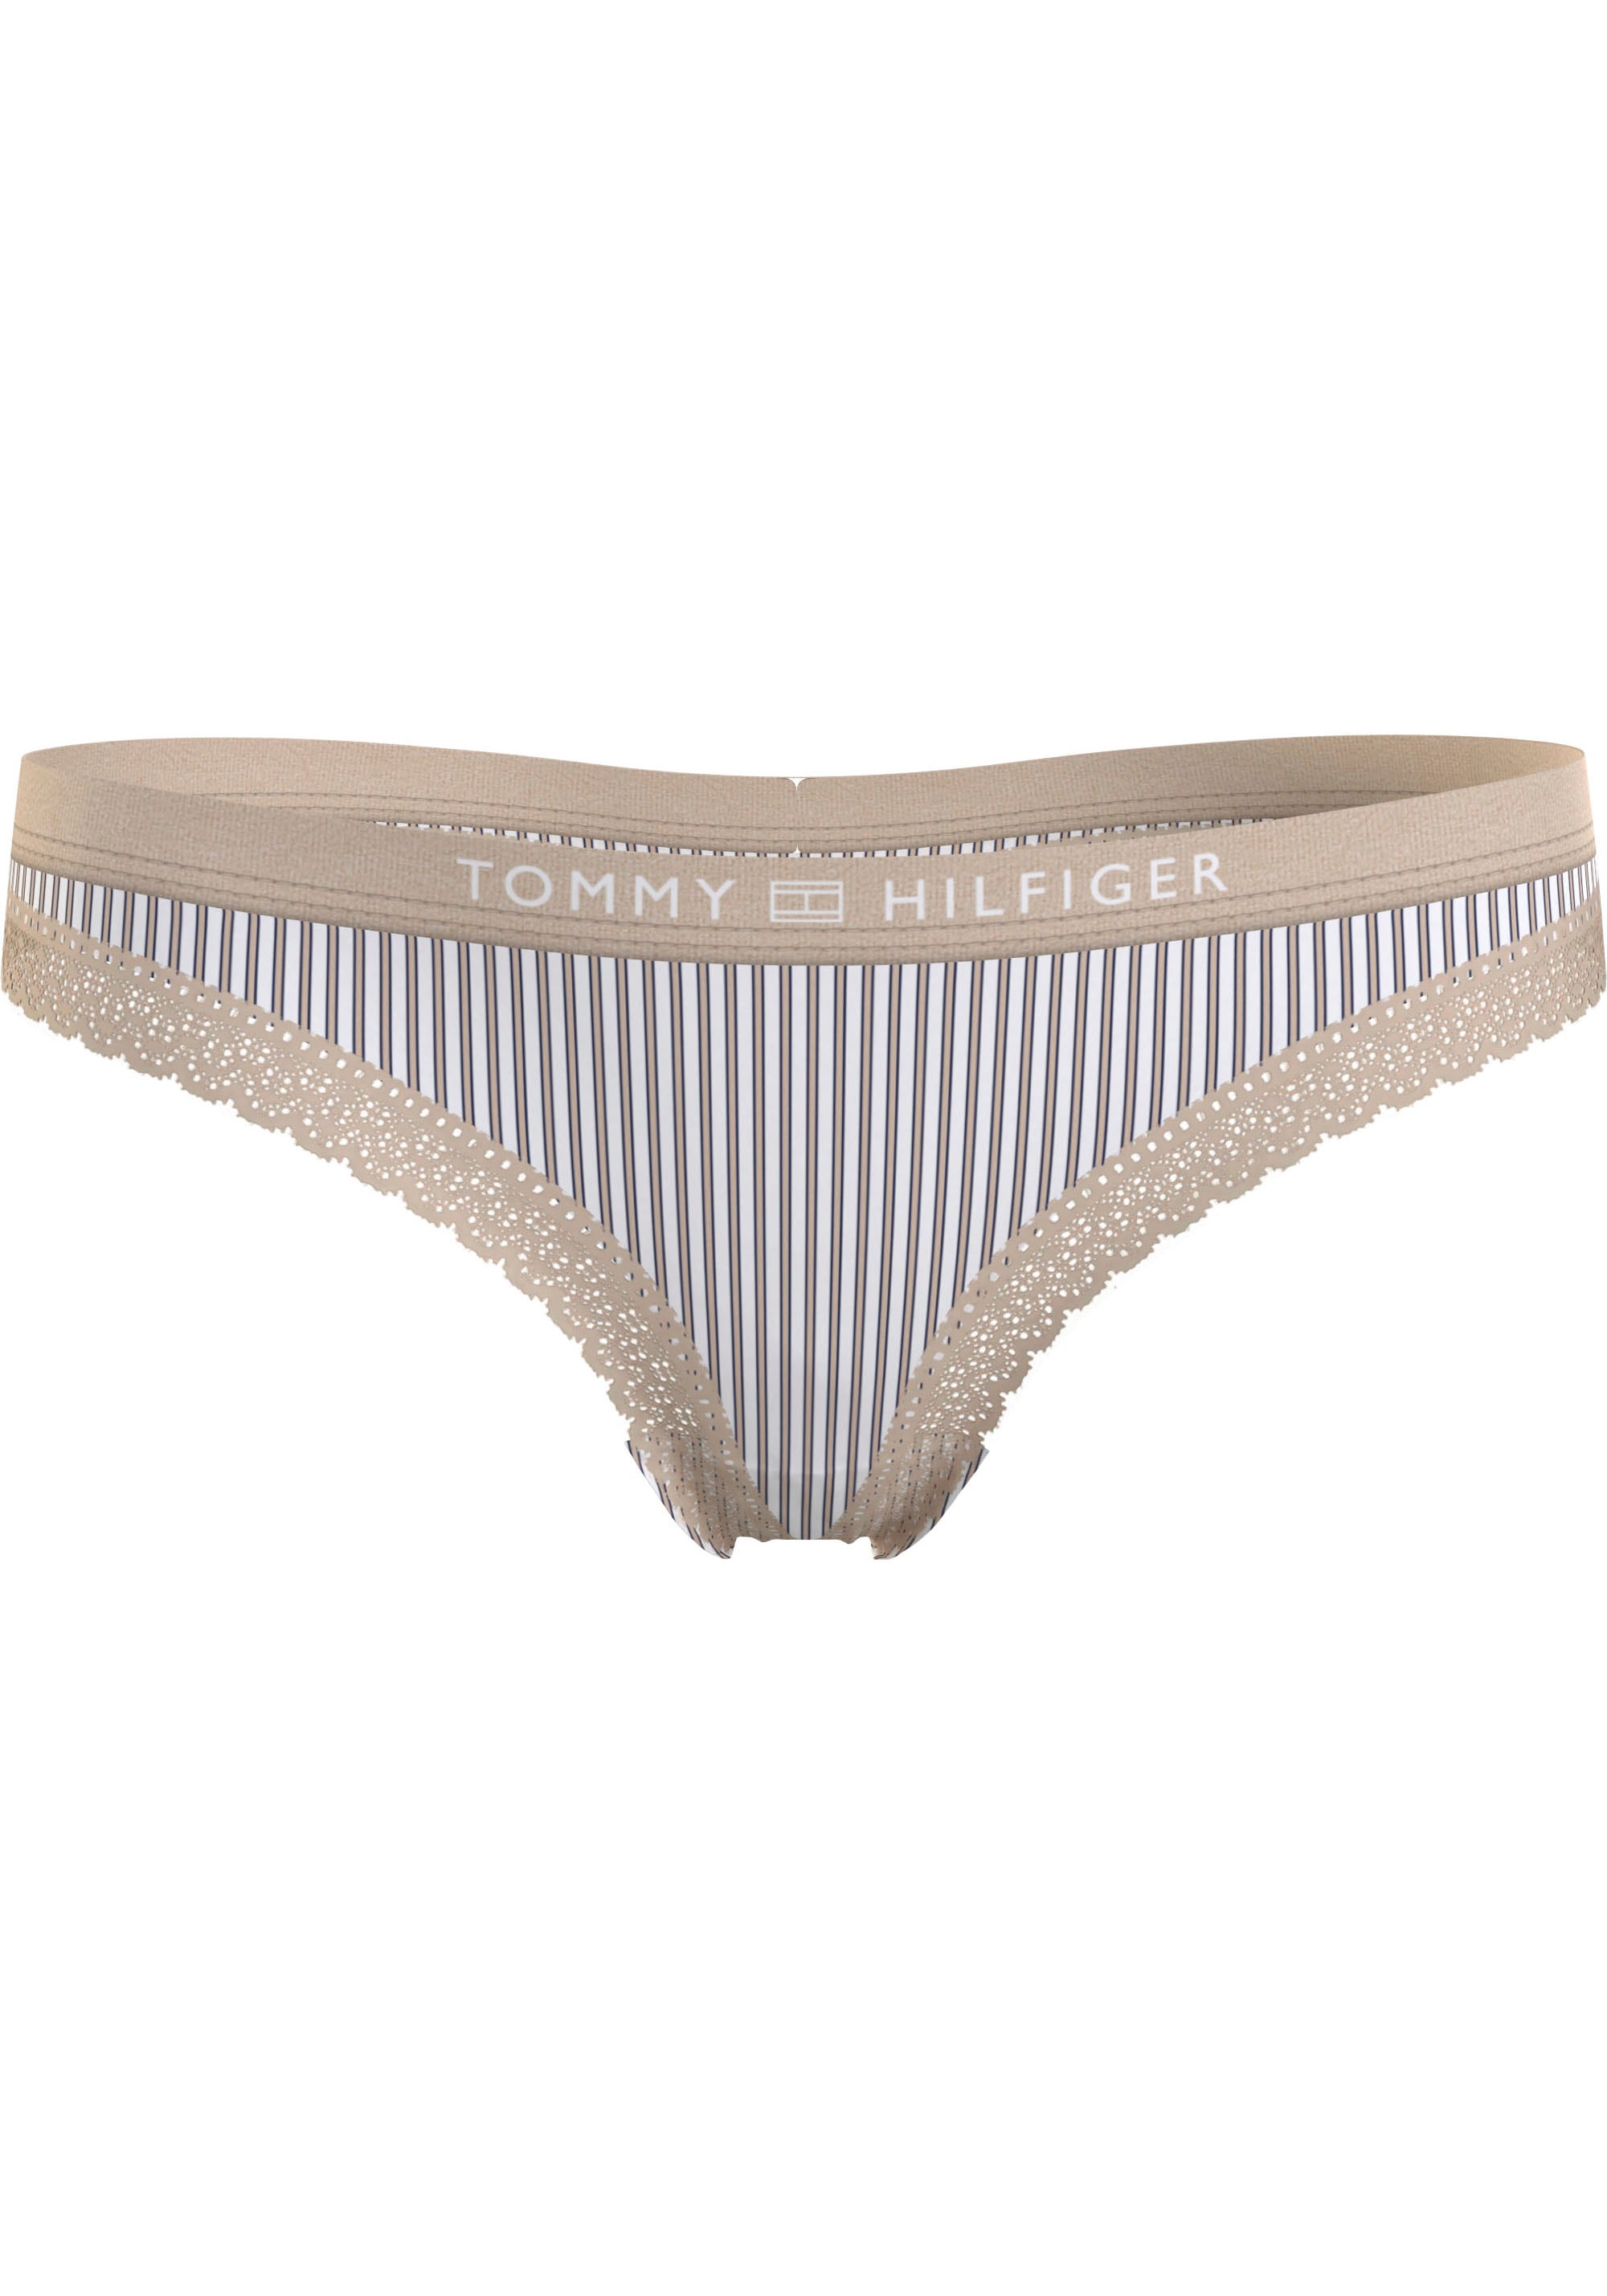 Underwear bei Tommy bestellen mit Logobund online String, Hilfiger Jelmoli-Versand Schweiz